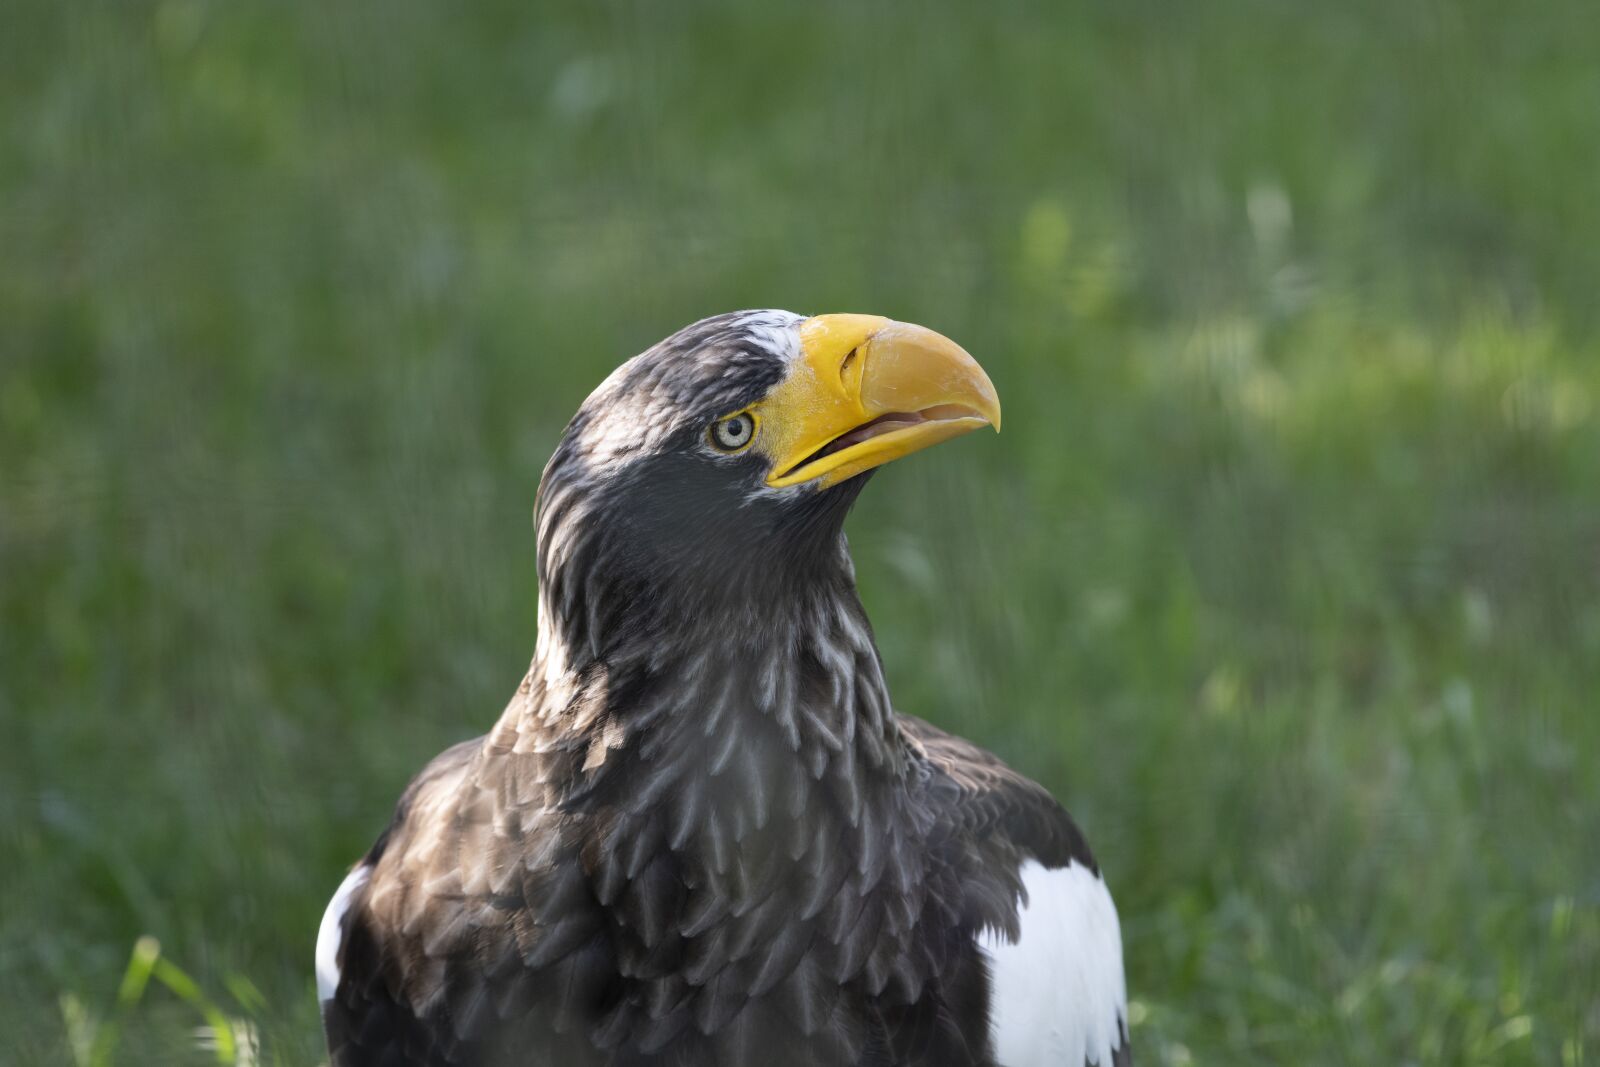 Nikon Z7 sample photo. White tailed eagle, predator photography